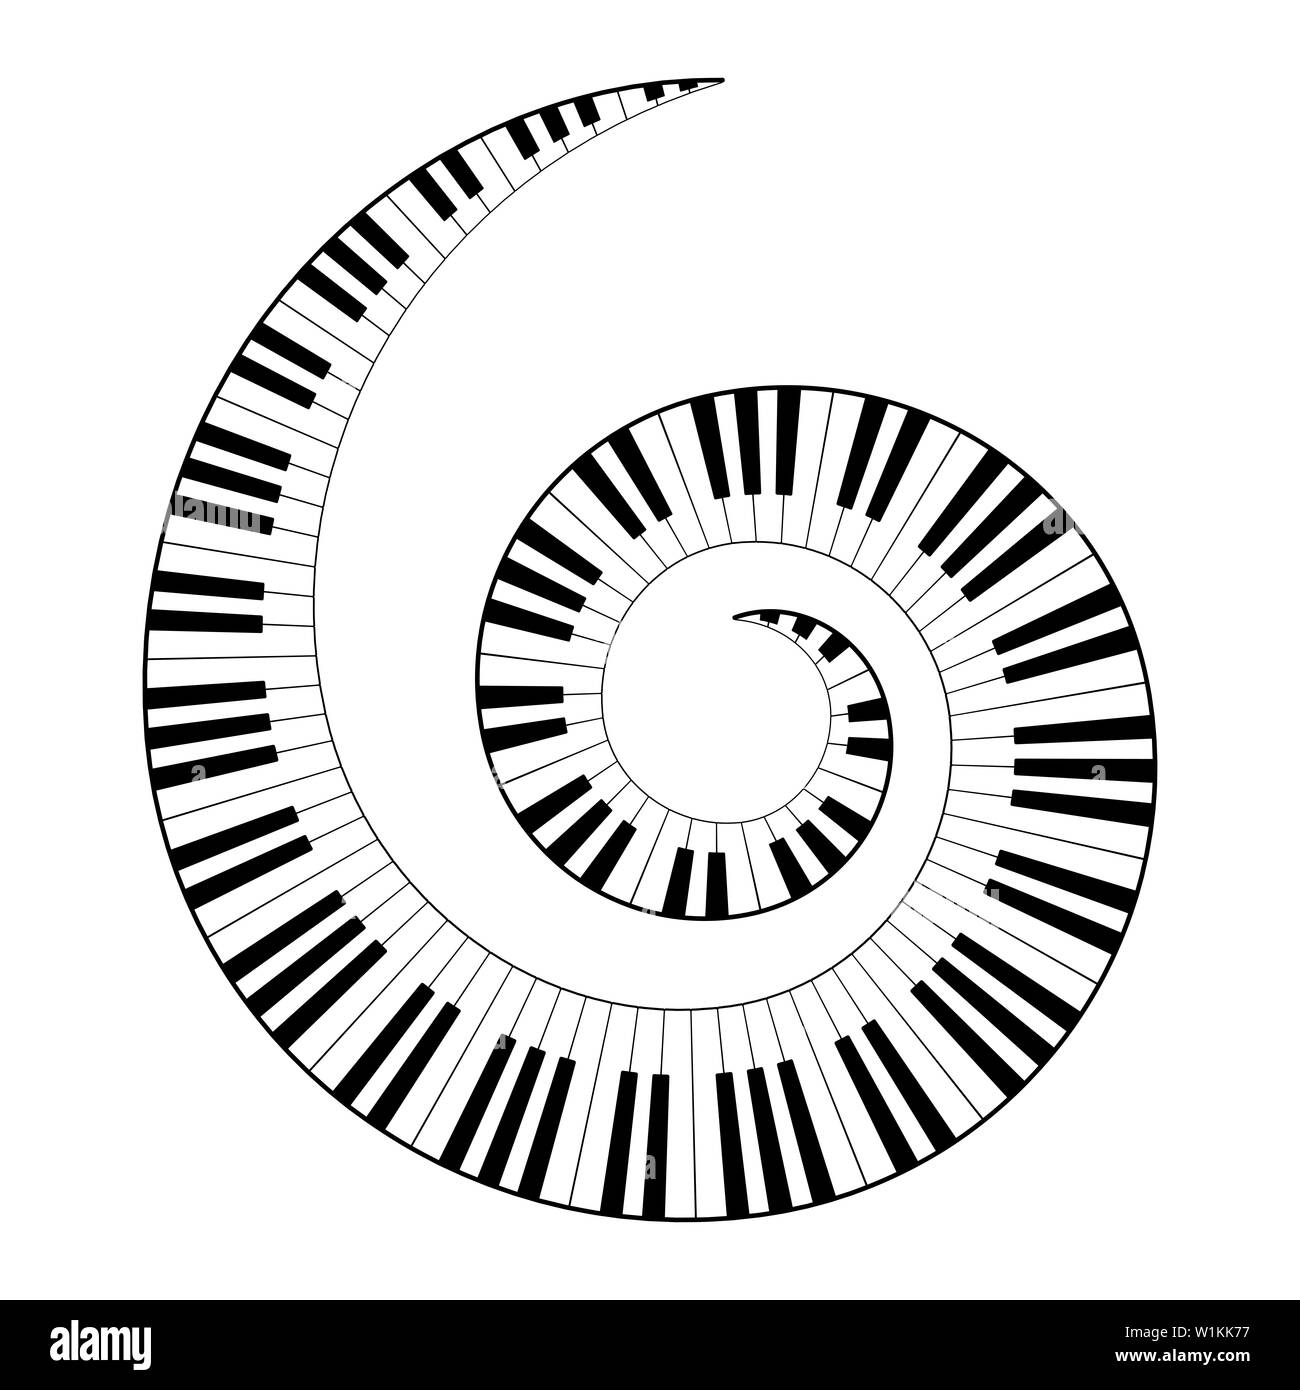 Musikalische Tastatur Spirale, von Oktave Muster gebaut, schwarze und weiße Klavier Tasten auf der Tastatur, in wiederholten Motiv geprägt. Abbildung. Stockfoto